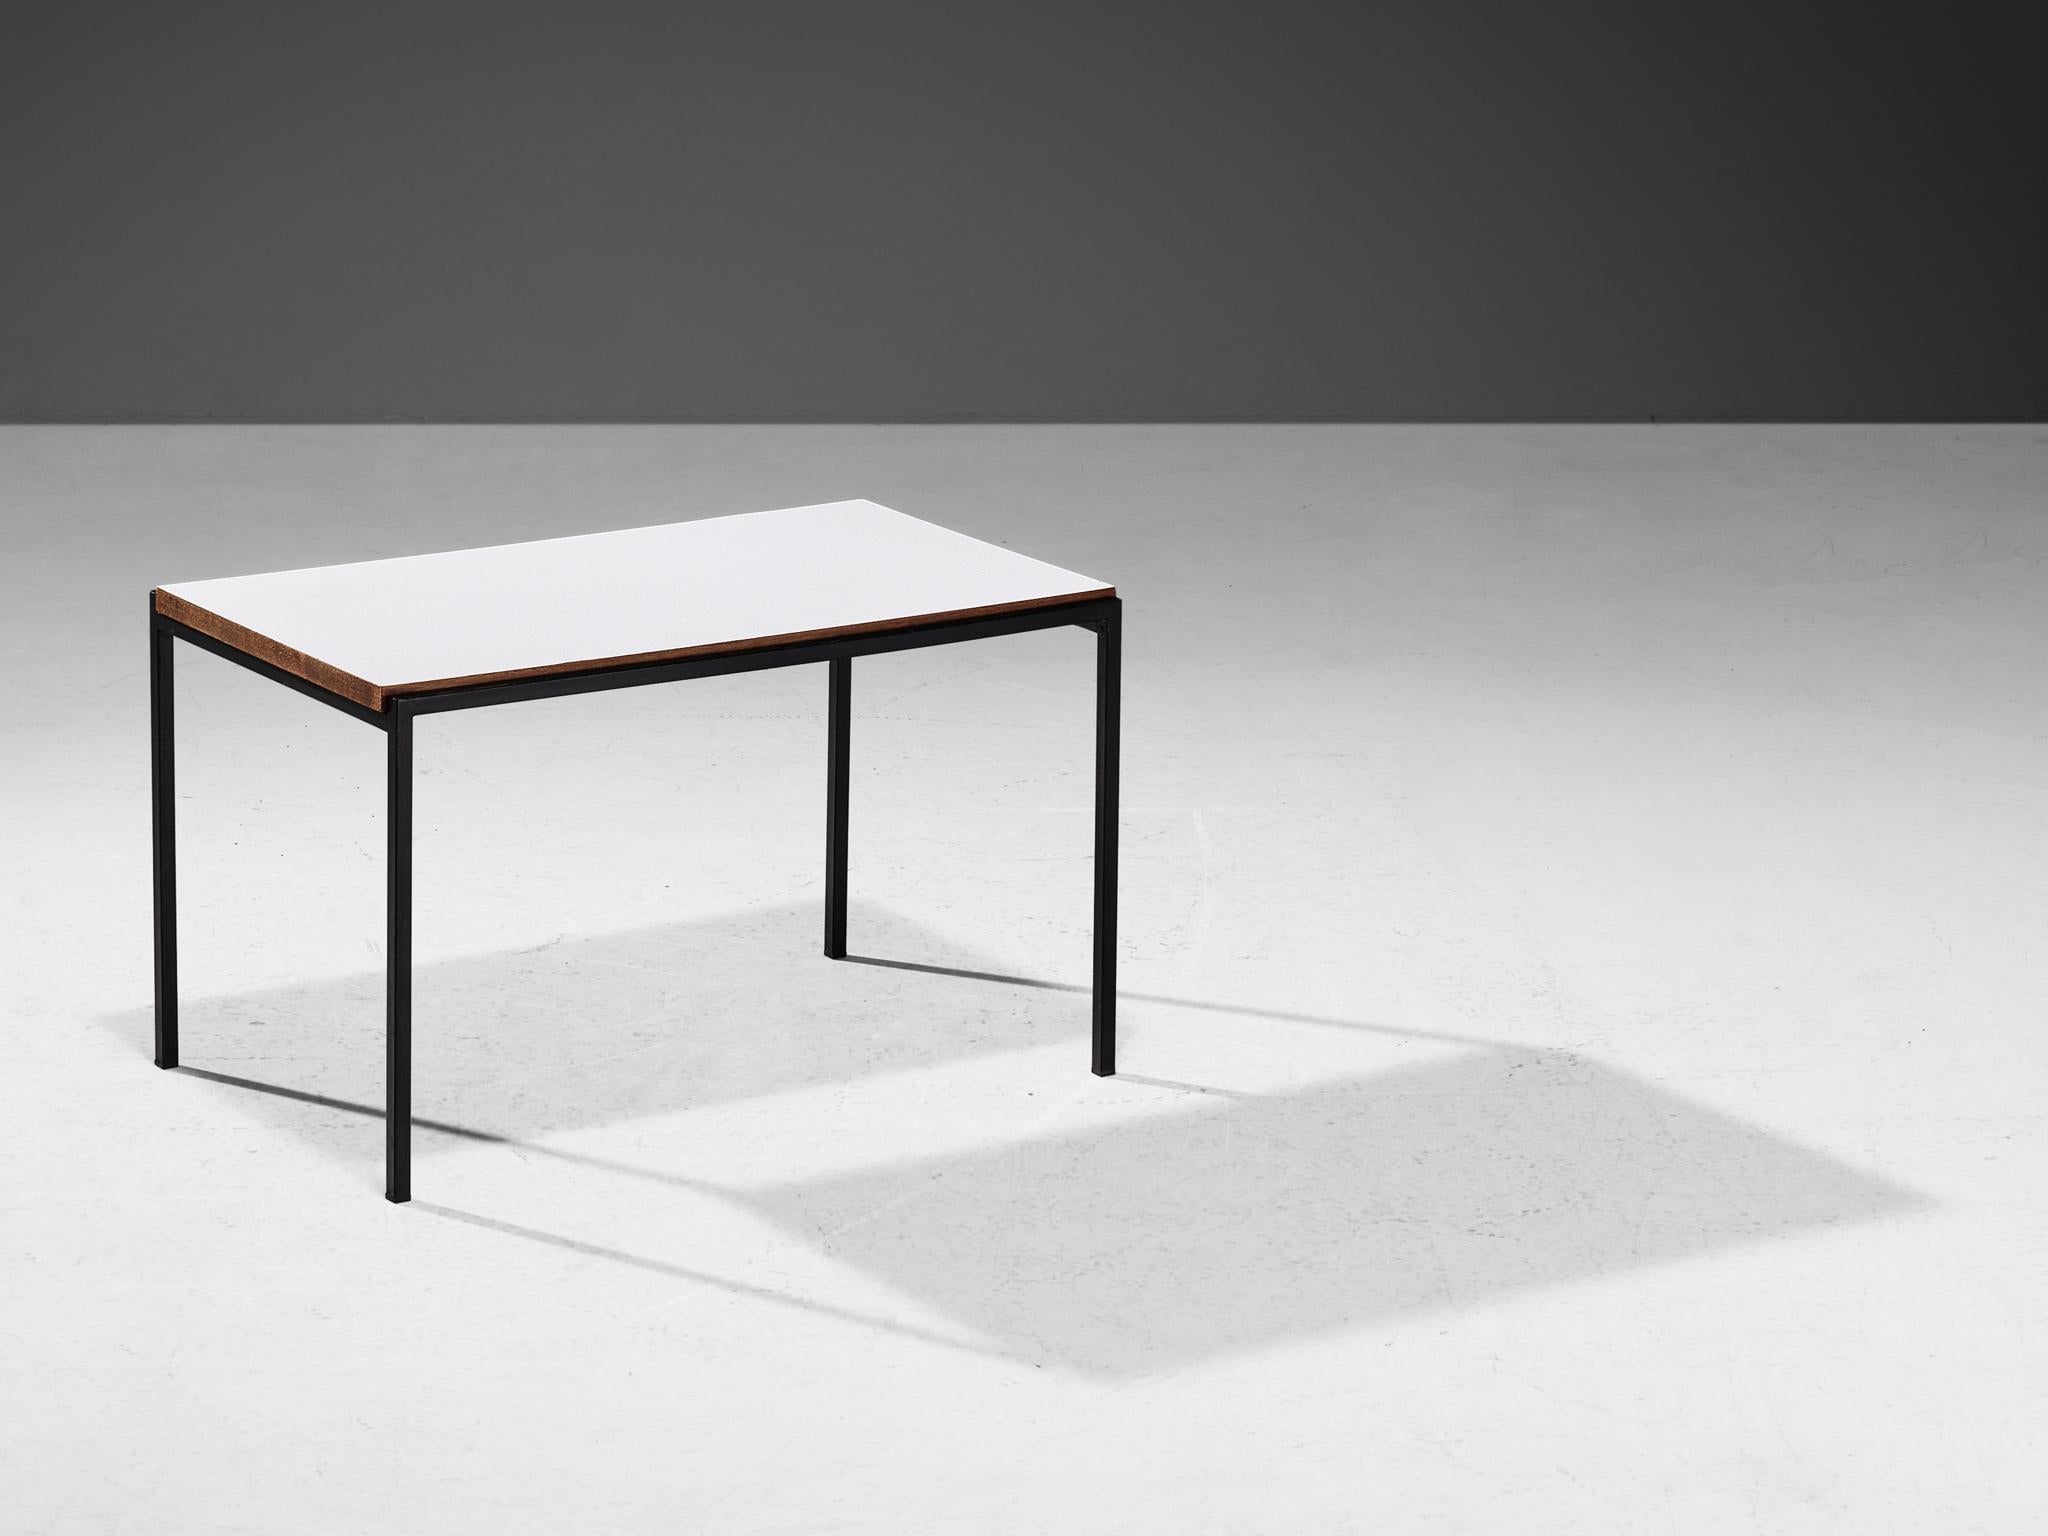 Table basse, fer, bois stratifié, bois, Pays-Bas, 1960

Table d'appoint ou table basse hollandaise simpliste composée d'un cadre en fer noir et d'un plateau en stratifié blanc. Le plateau en bois est partiellement en lévitation dans le cadre